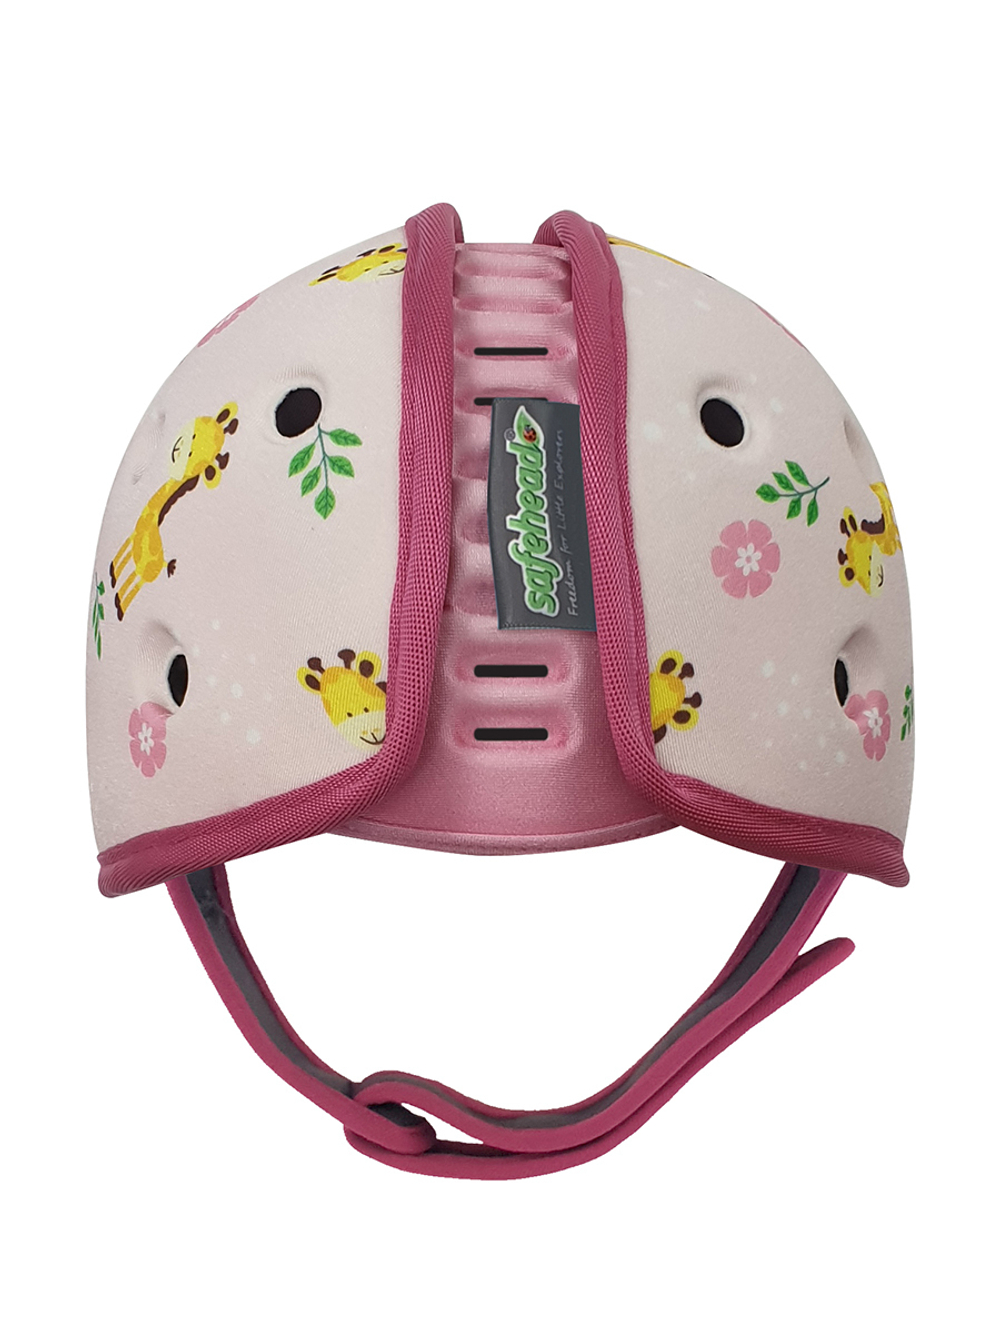 Мягкая шапка-шлем для защиты головы SafeheadBABY. Жираф